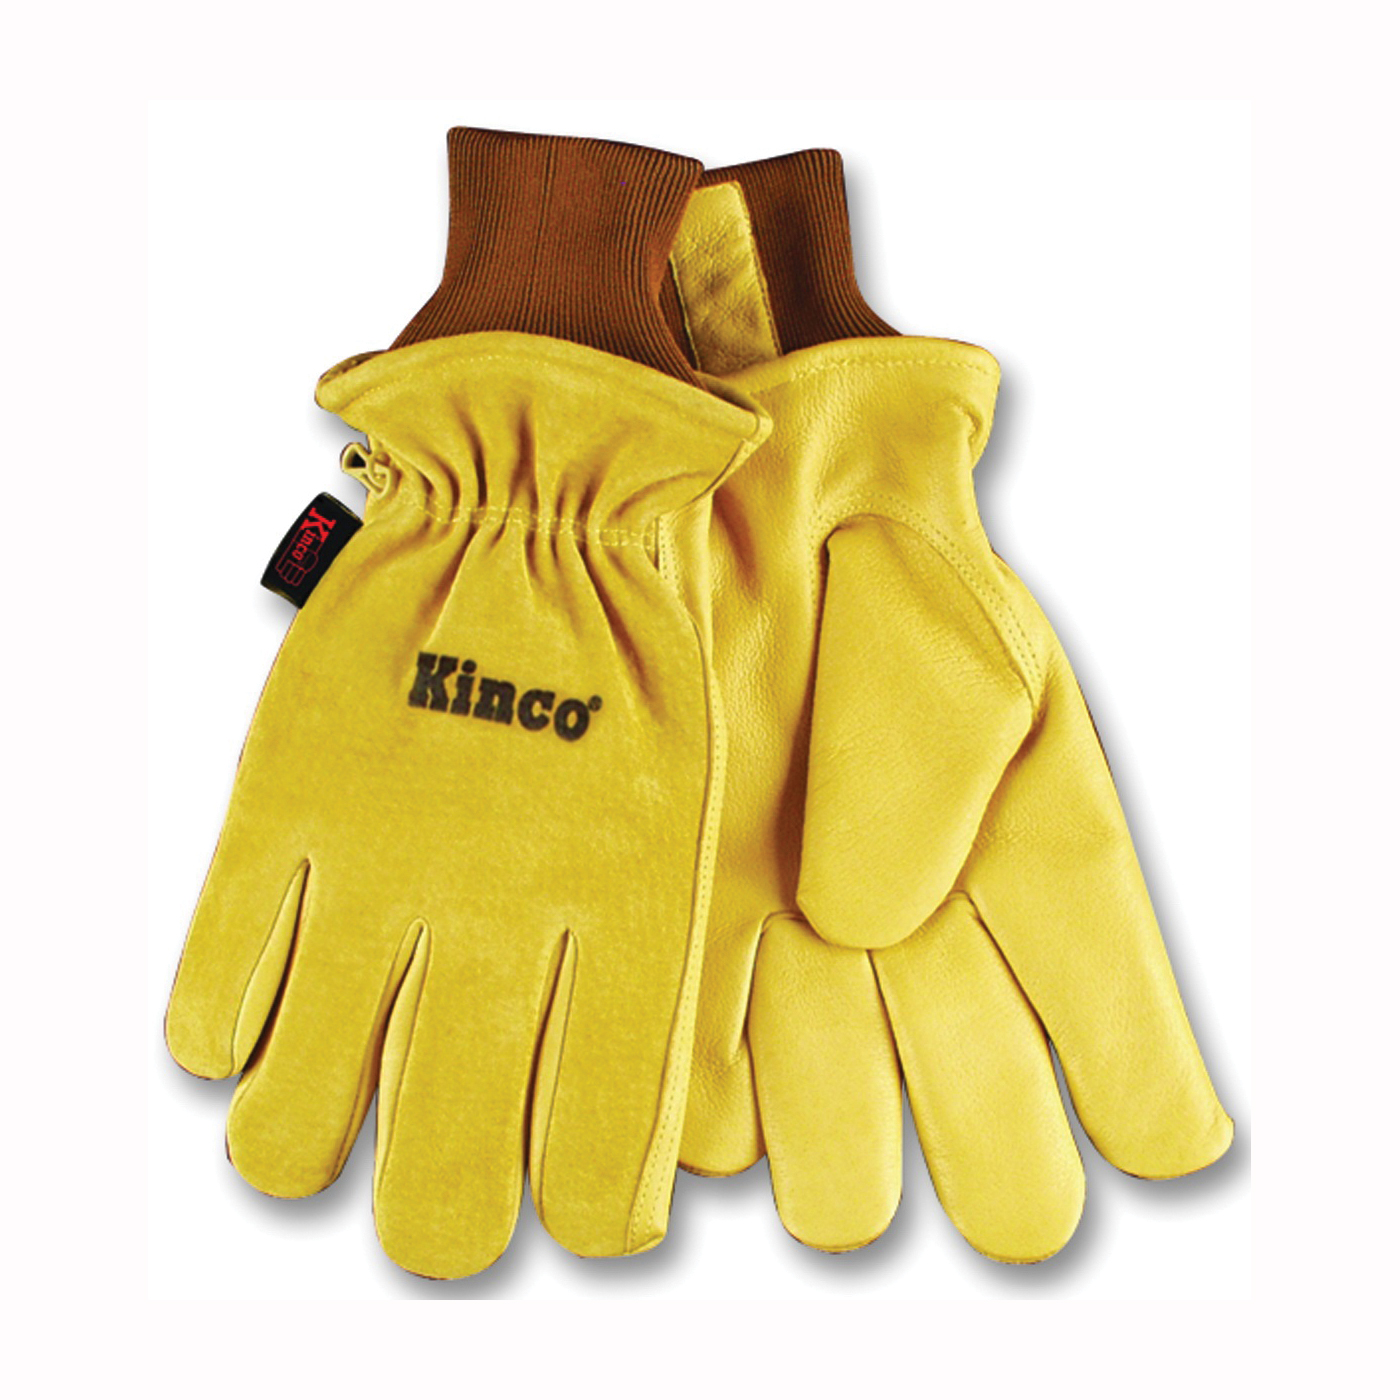 94HK-L Protective Gloves, Men's, L, 13 in L, Keystone Thumb, Knit Wrist Cuff, Pigskin Leather, Gold